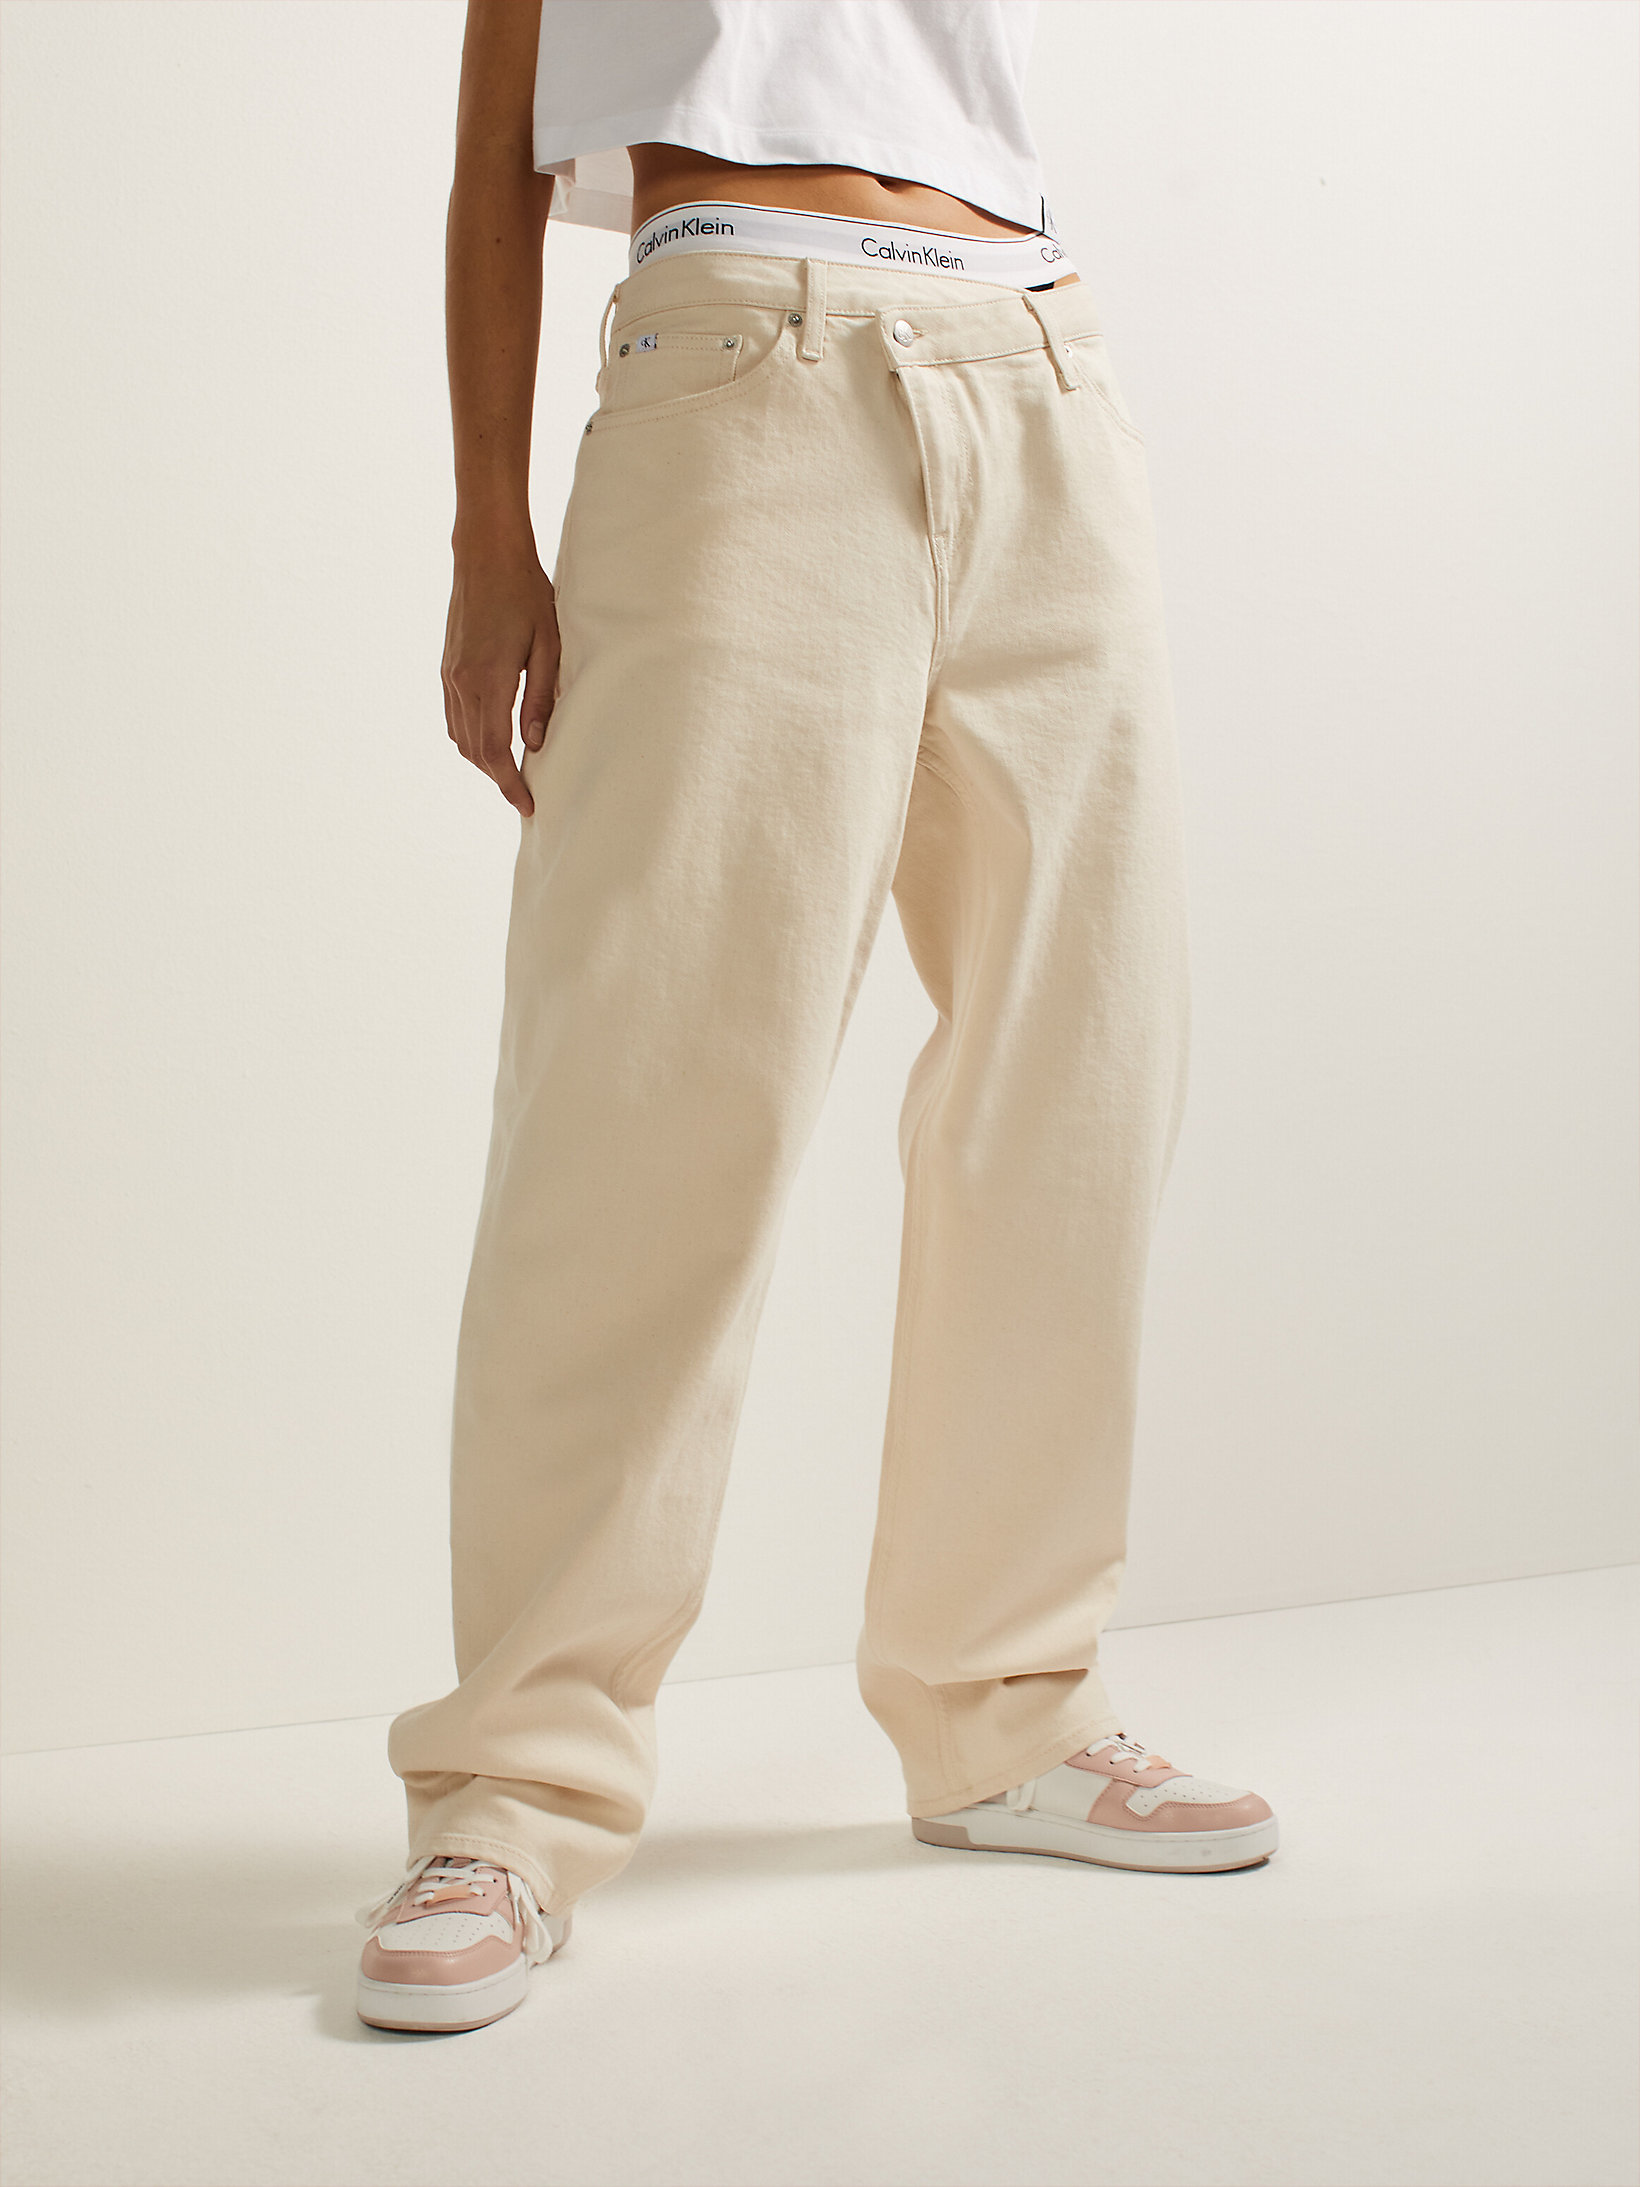 Crescent Moon Gerade Geschnittene Jeans Im Neunzigerjahre-Look undefined Damen Calvin Klein